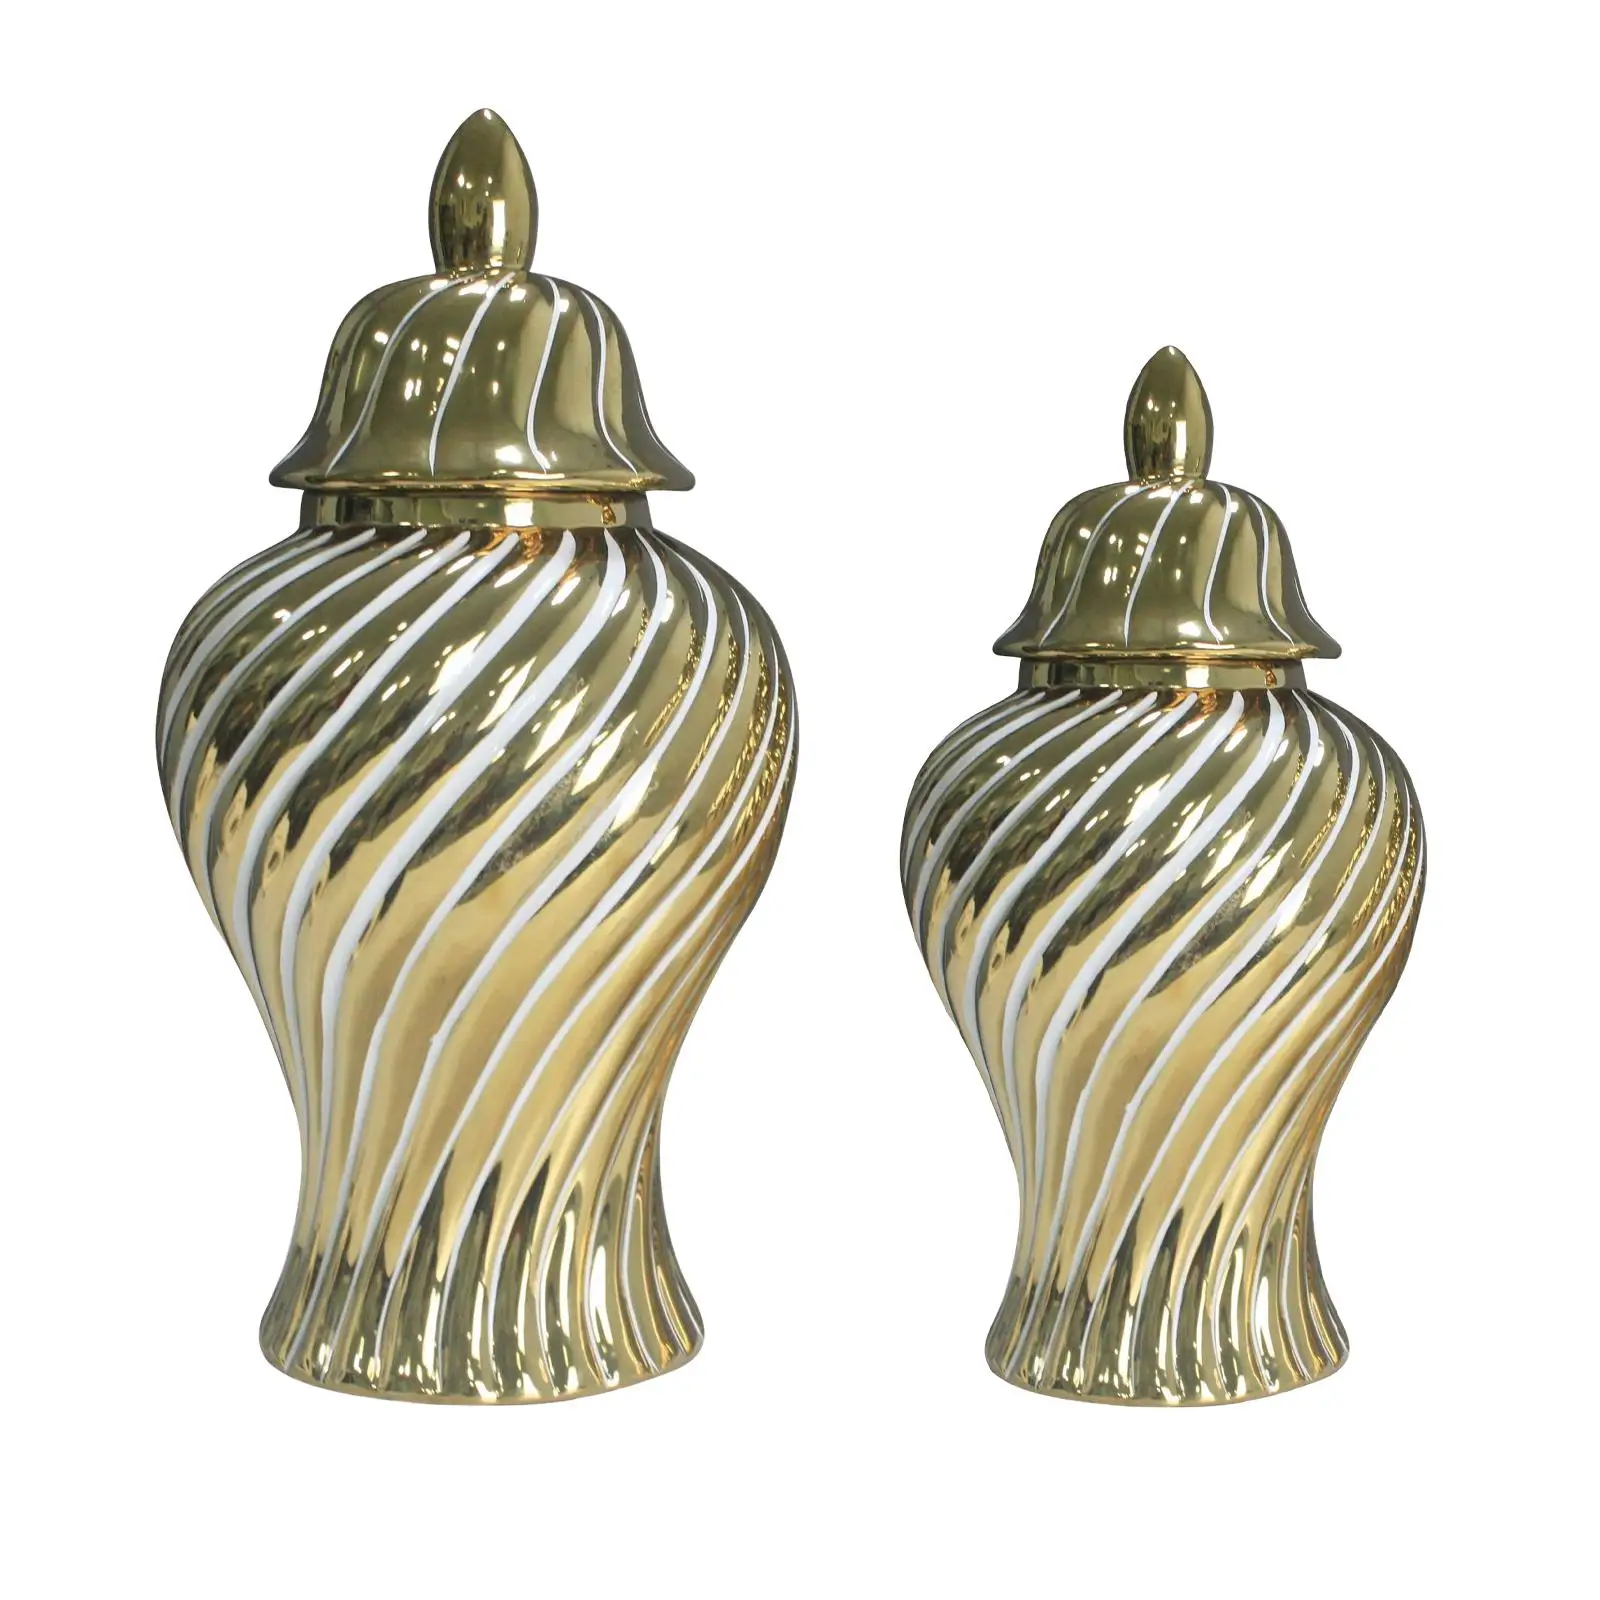 Gold of Ginger Jars Home Decor Light Luxury Artwork Vase for Flowers for Anniversary Living Room Kitchen Restaurant